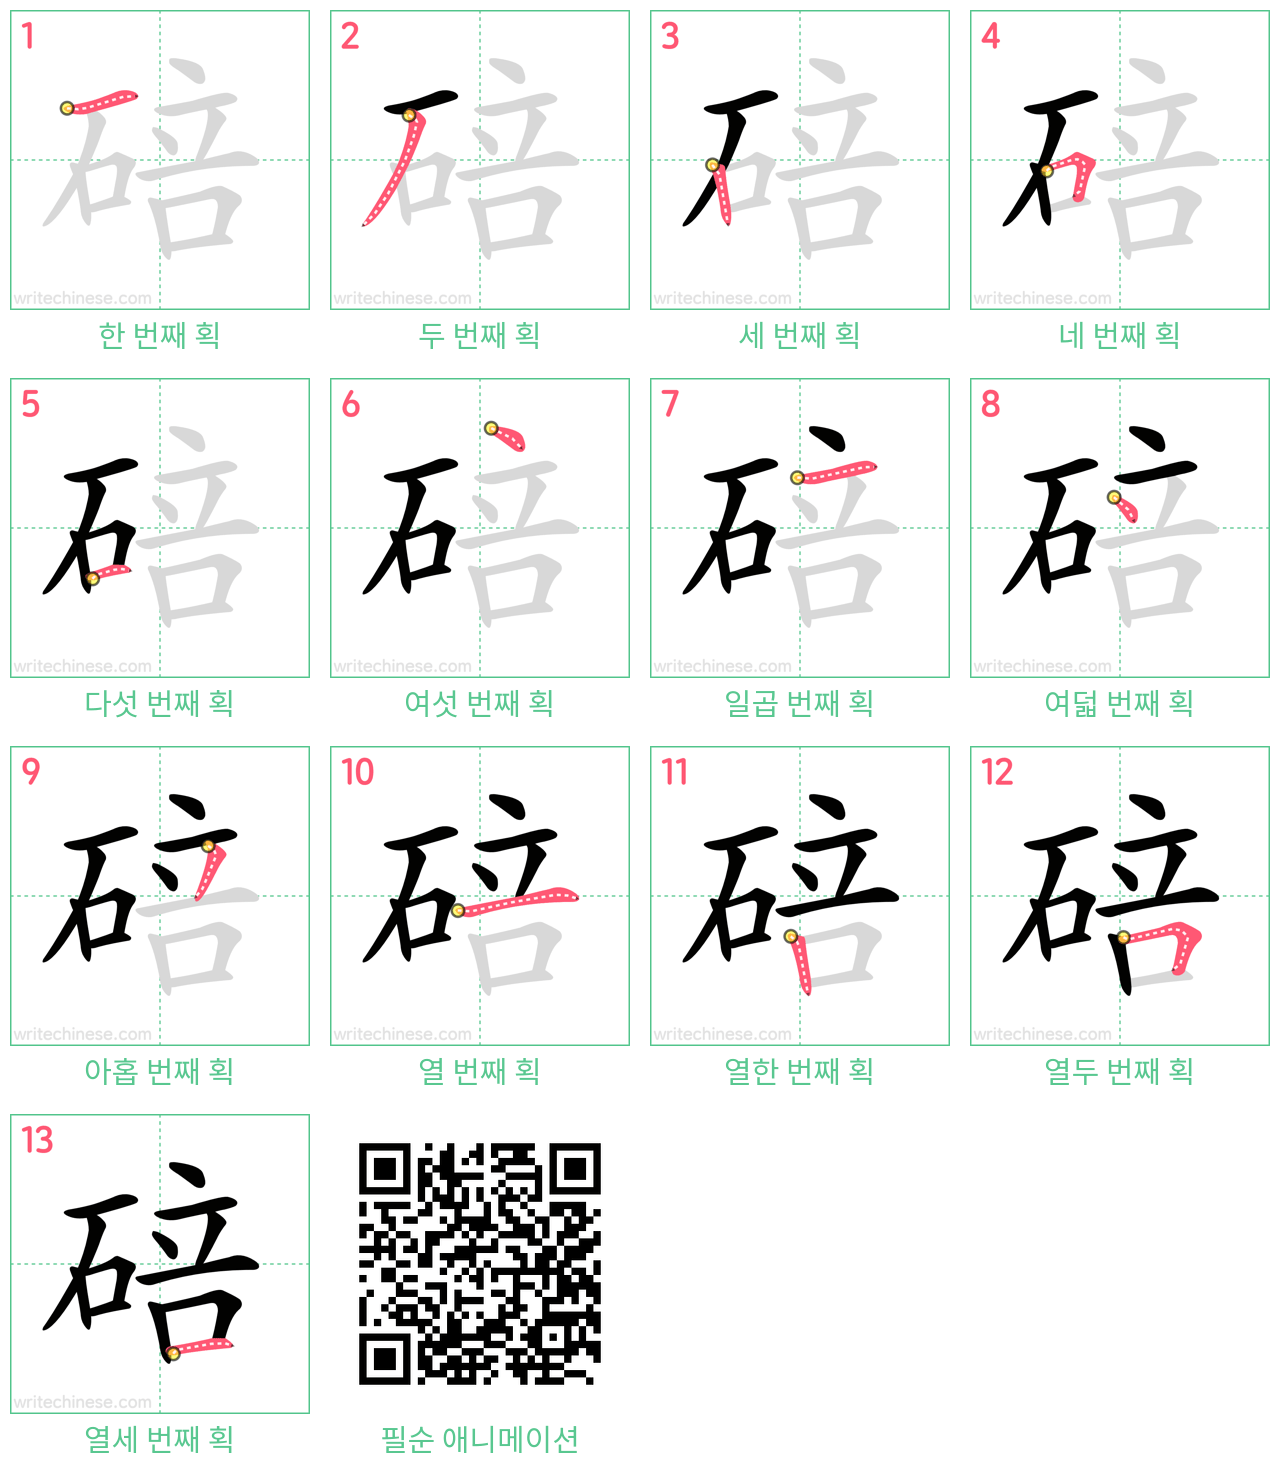 碚 step-by-step stroke order diagrams